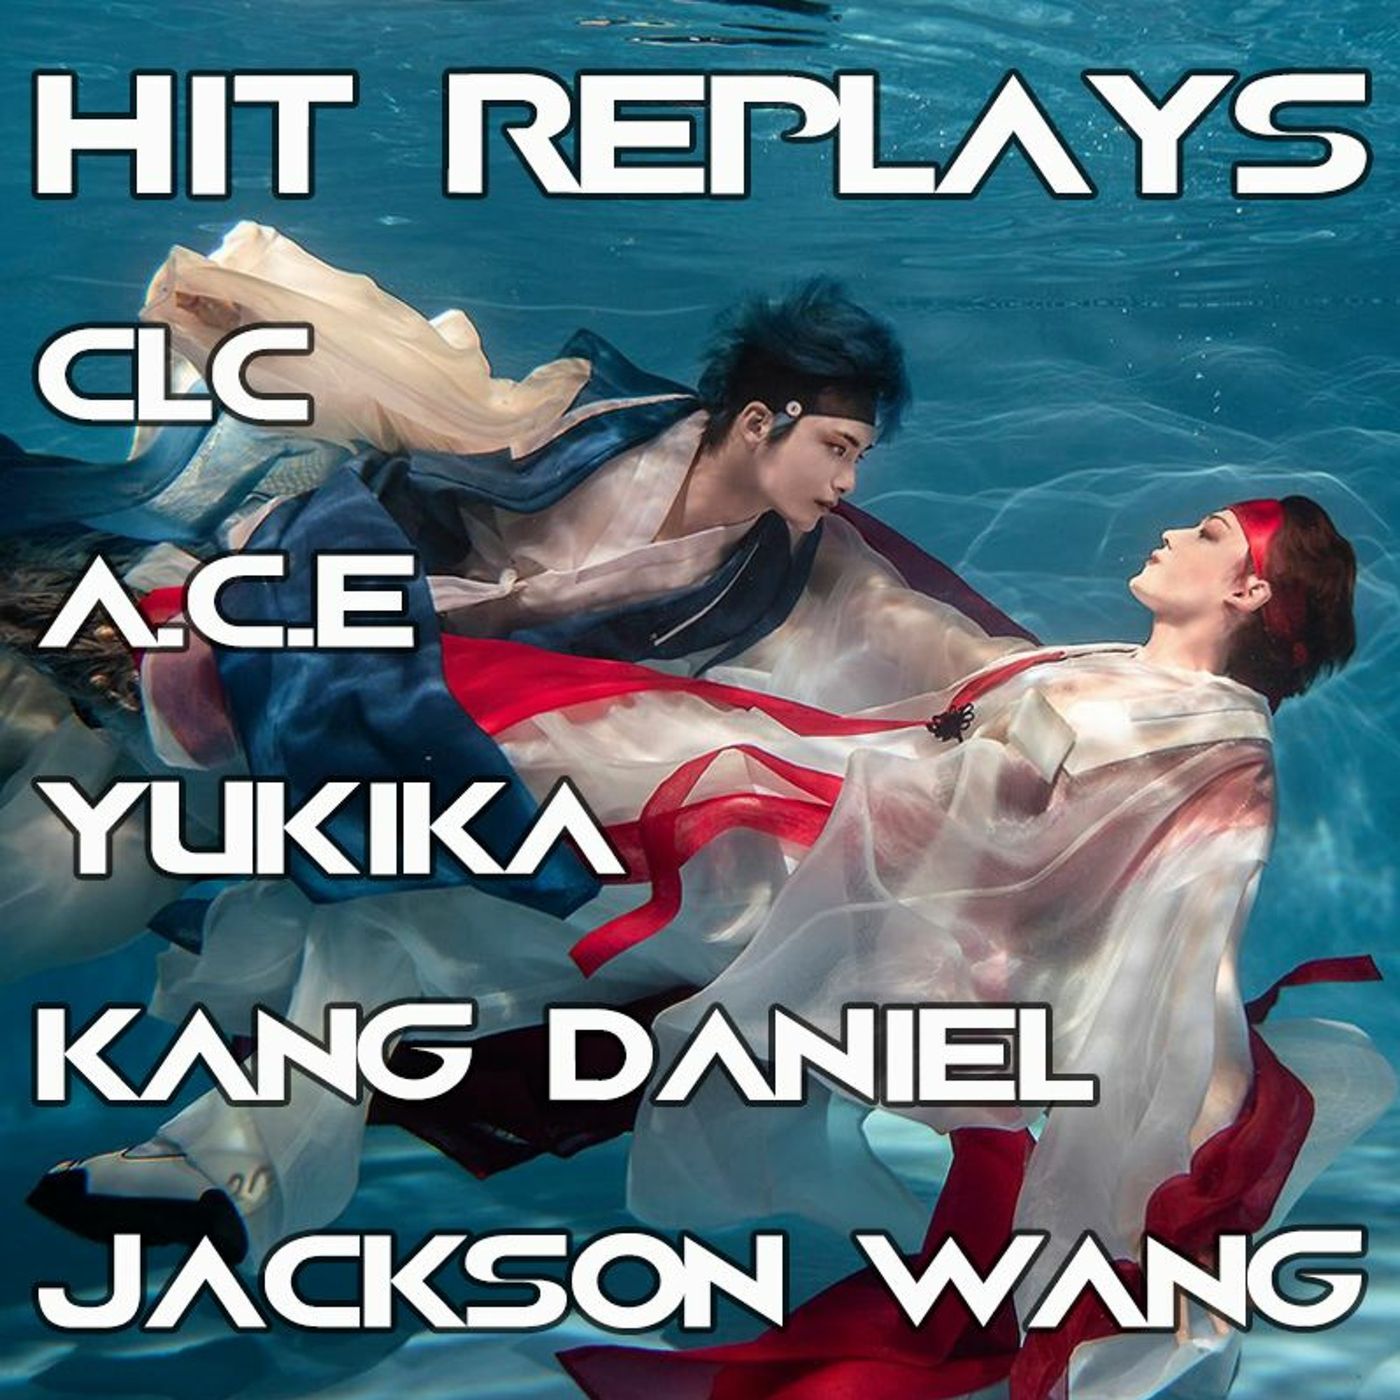 Hit Replays: A.C.E, CLC, Jackson Wang, KANG DANIEL, Yukika